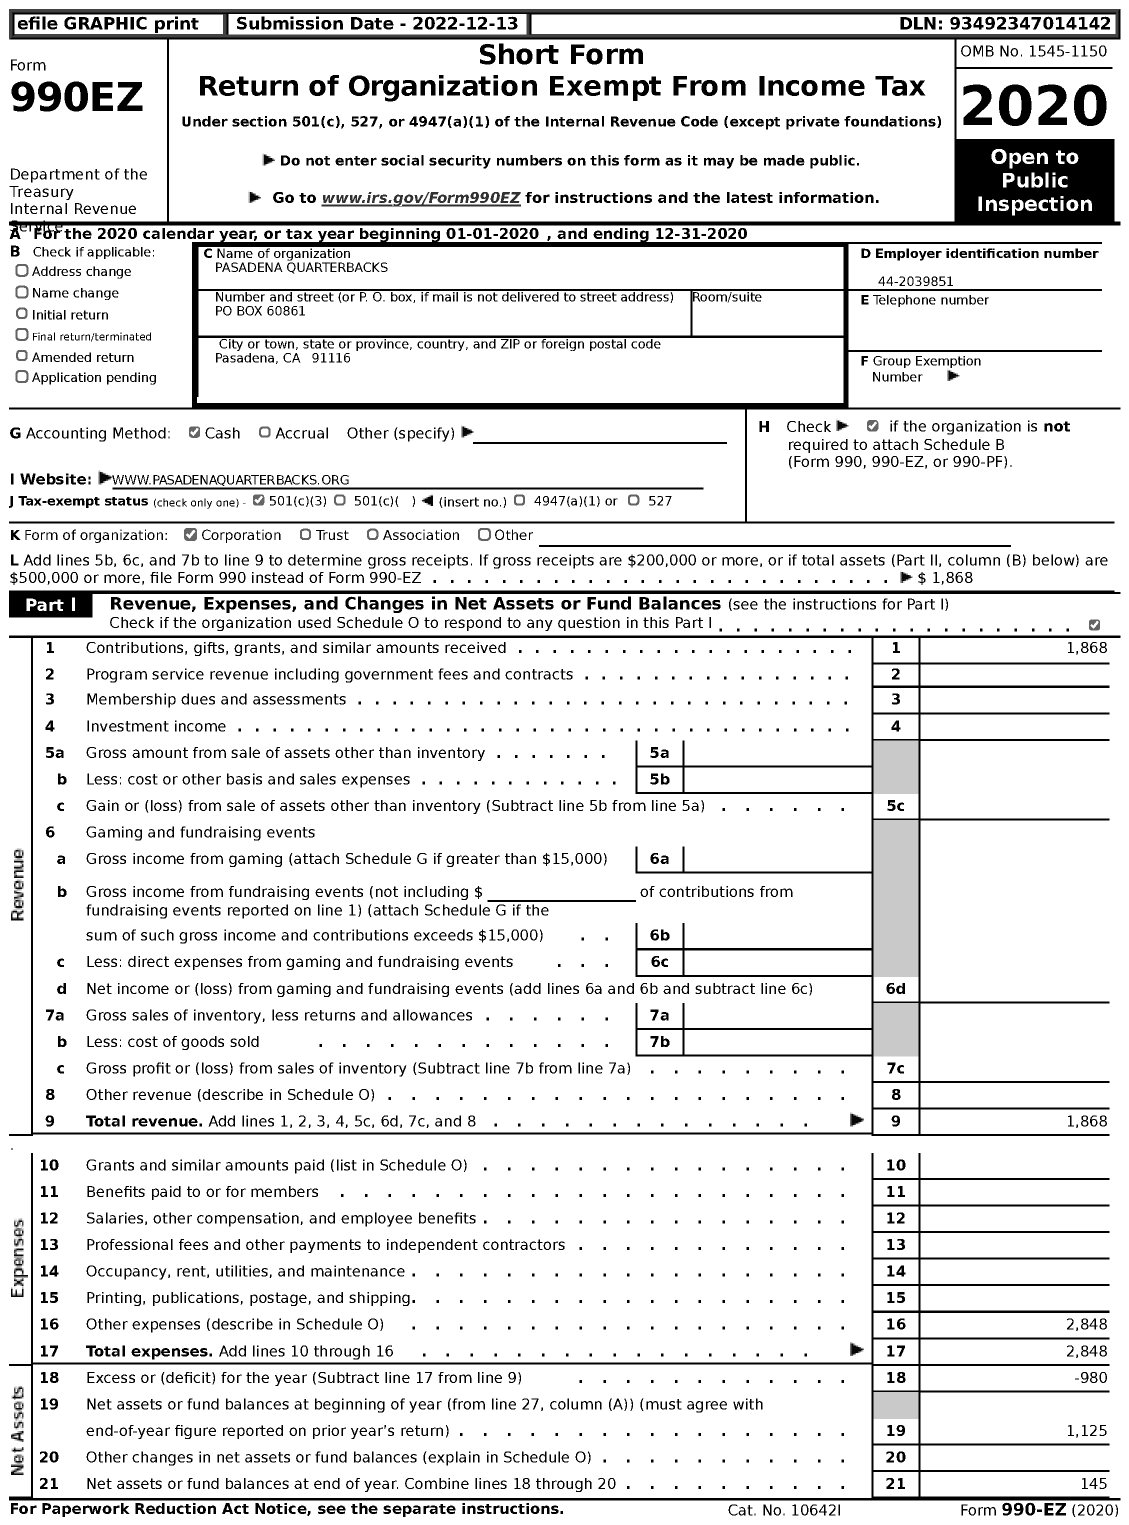 Image of first page of 2020 Form 990EZ for Pasadena Quarterbacks